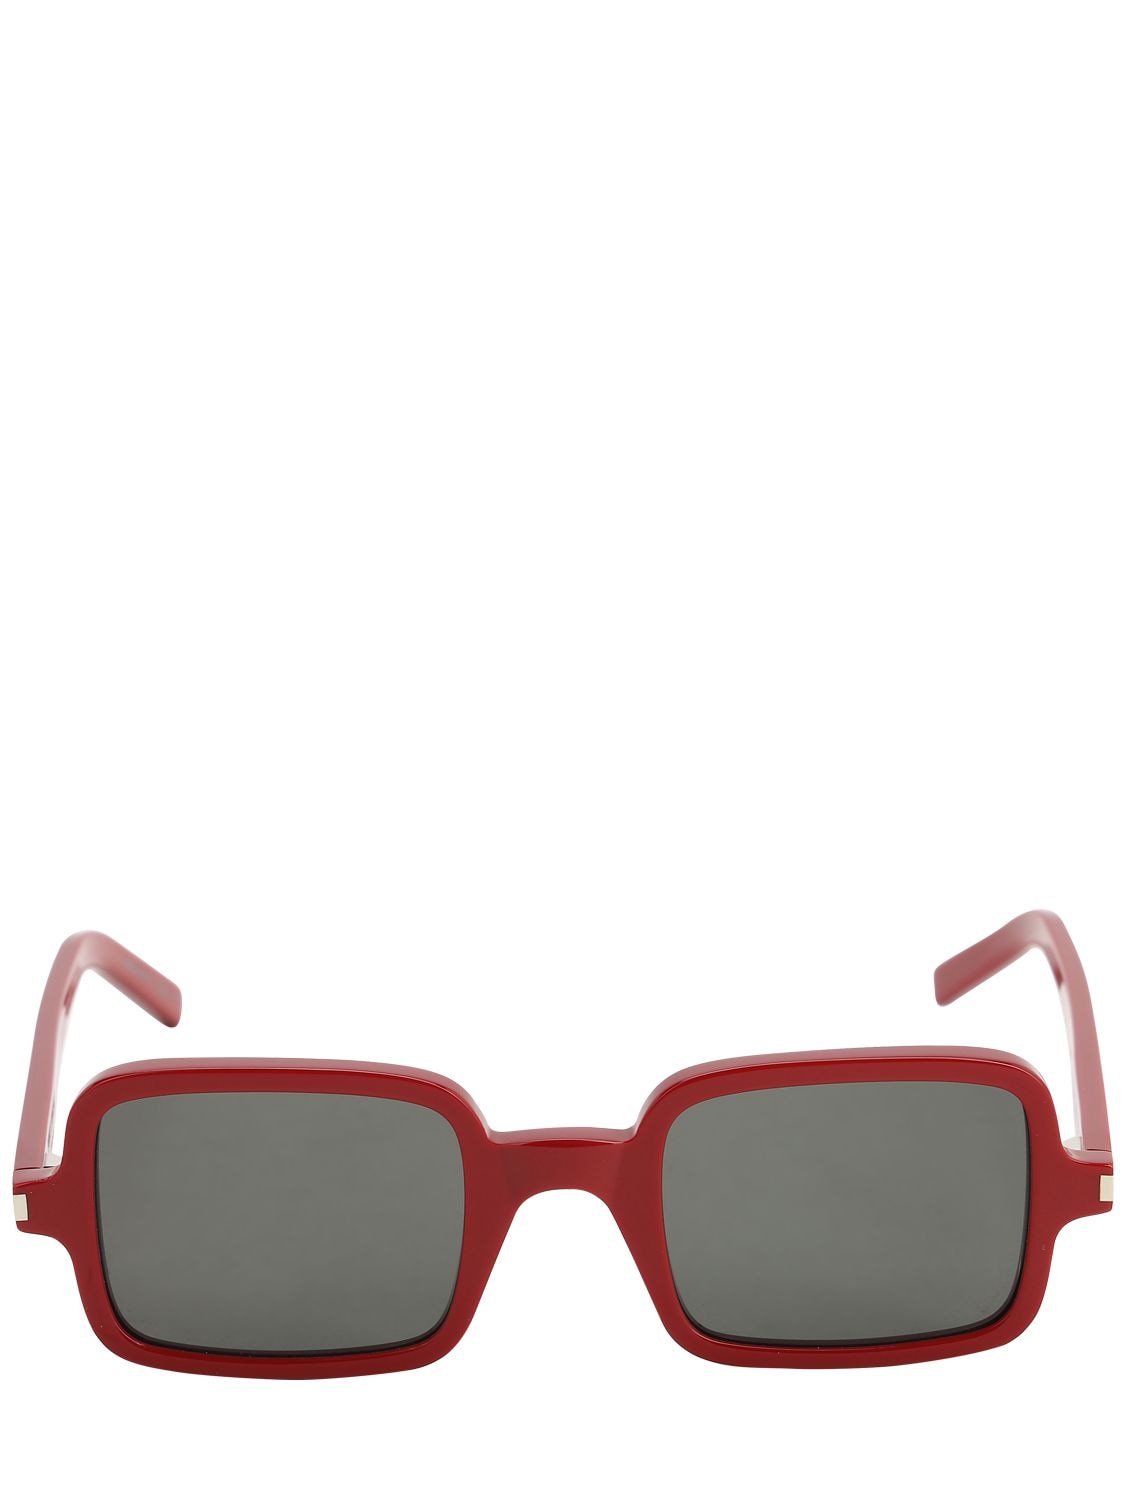 Saint Laurent Squared Acetate Sunglasses In Red